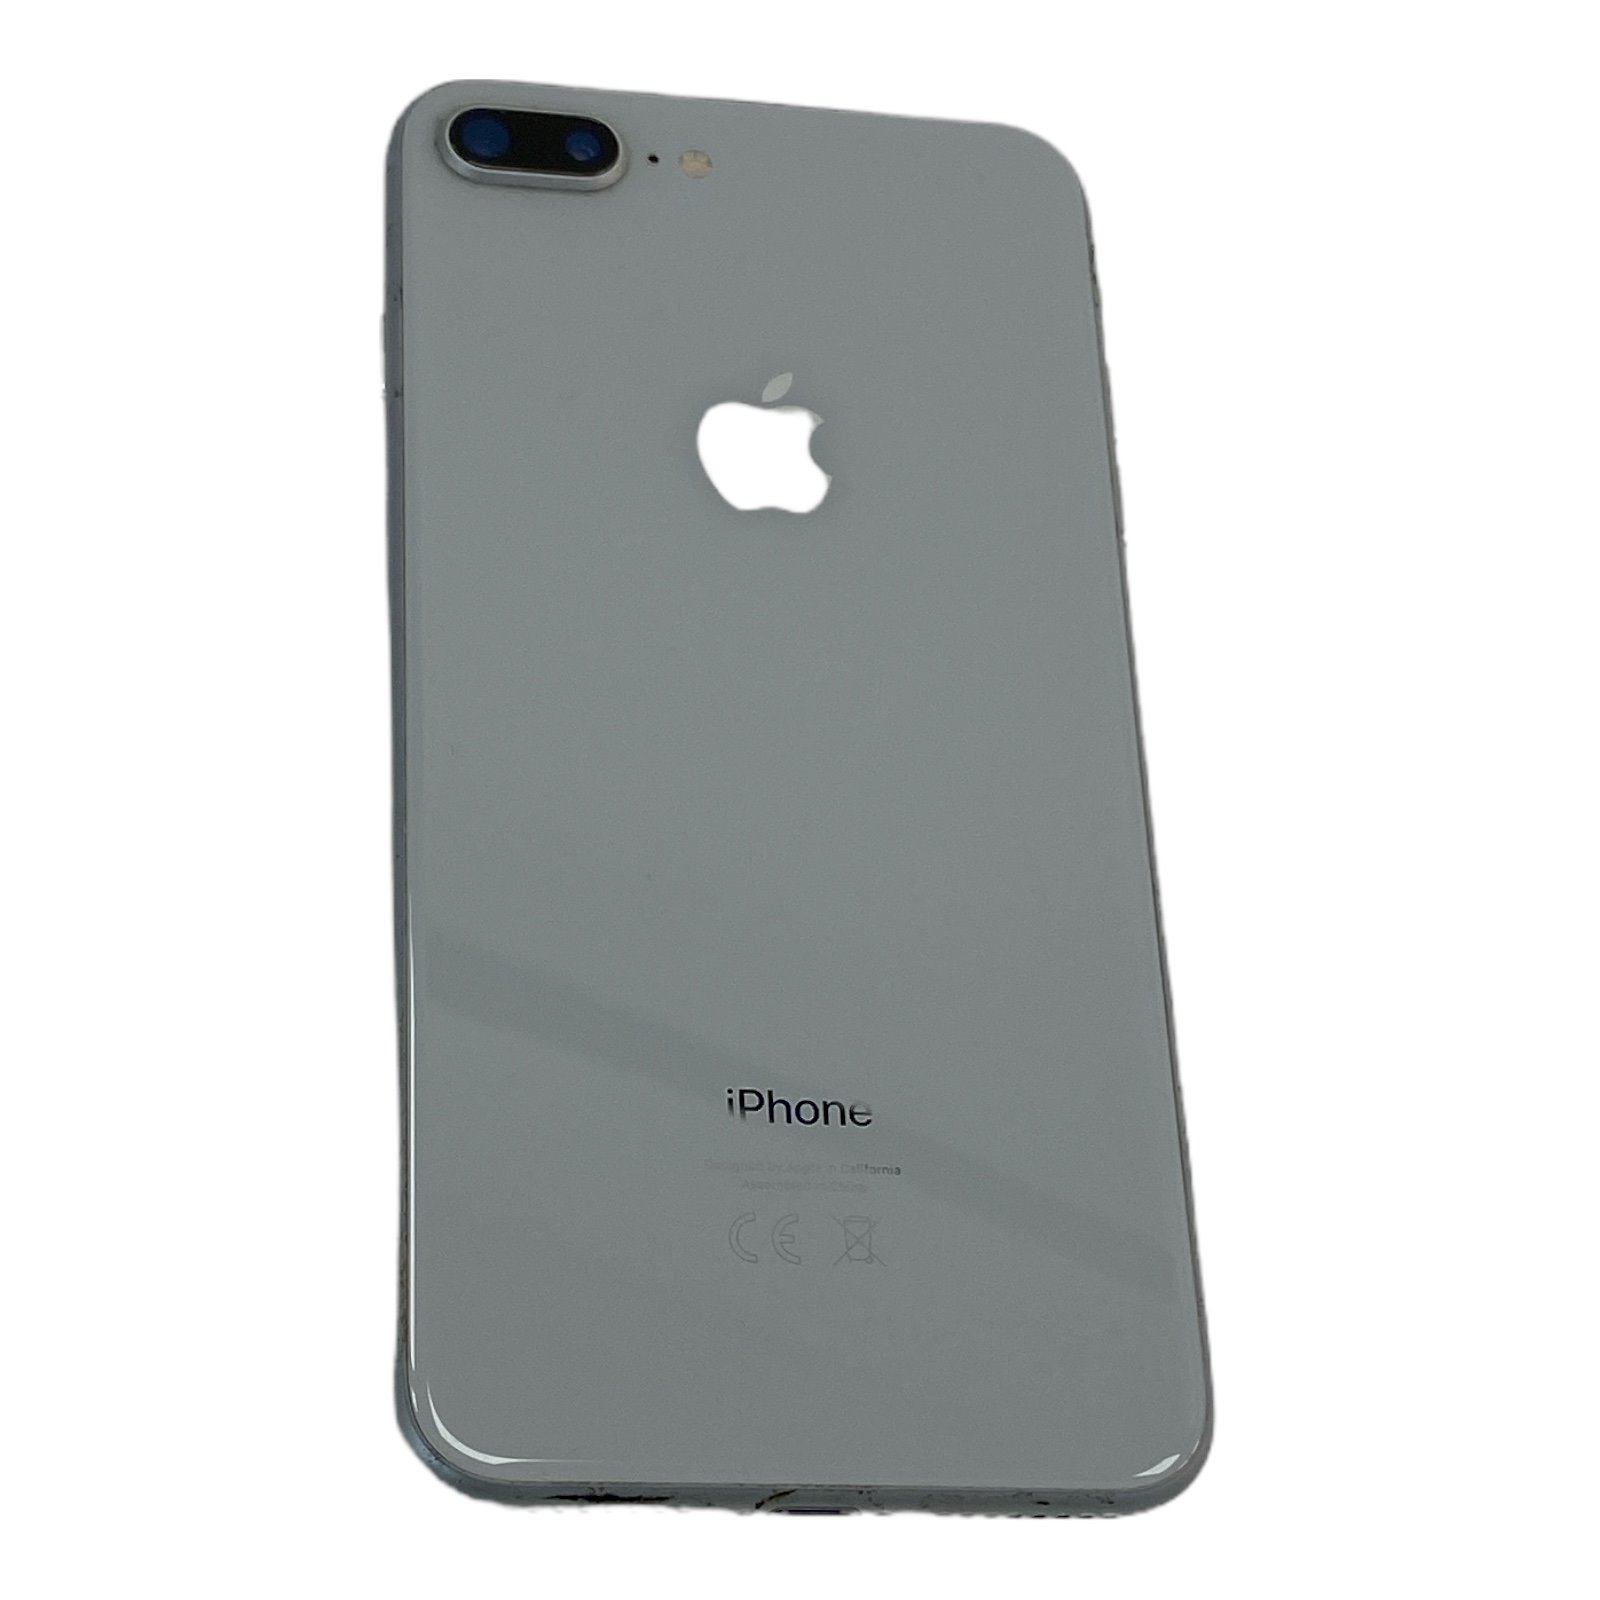 Apple iPhone 8 Plus Glasbruch C- Ware 64GB weiß-silber Smartphone 5,5" ohne Ladegerät